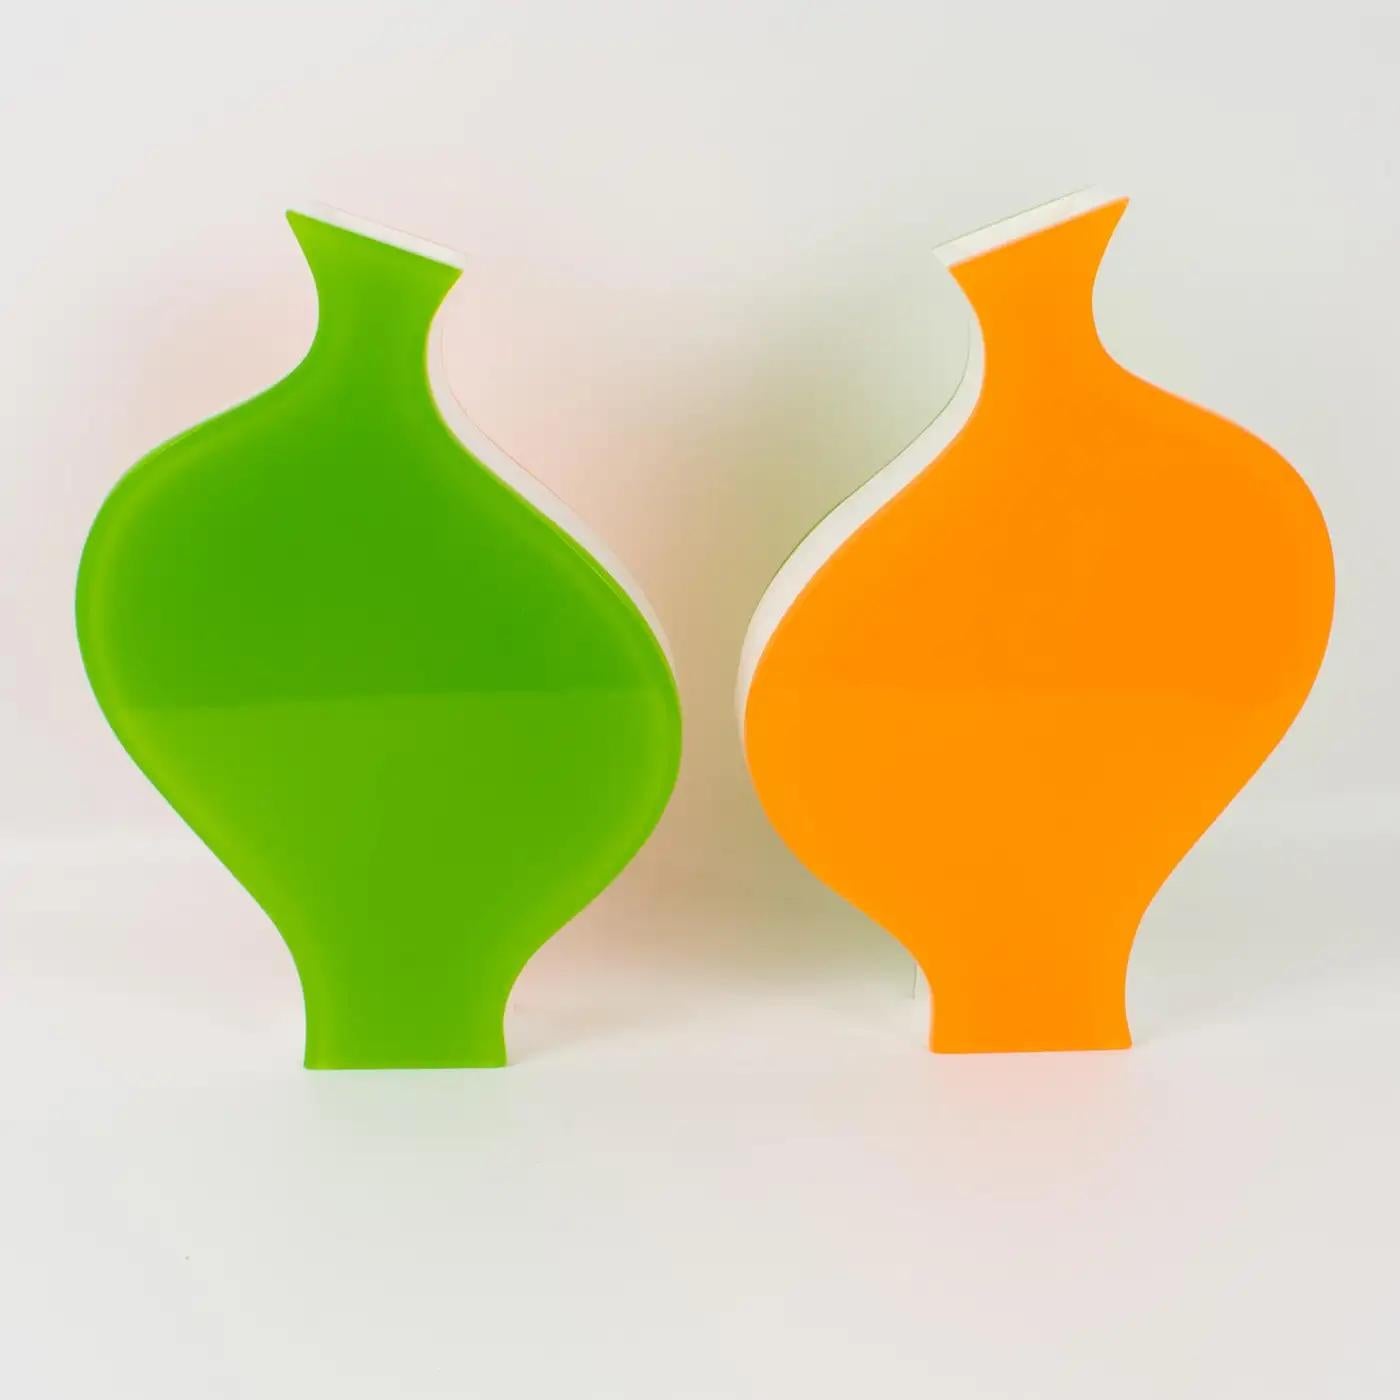 German Villeroy & Boch Orange and Green Lucite Vases, 1990s For Sale